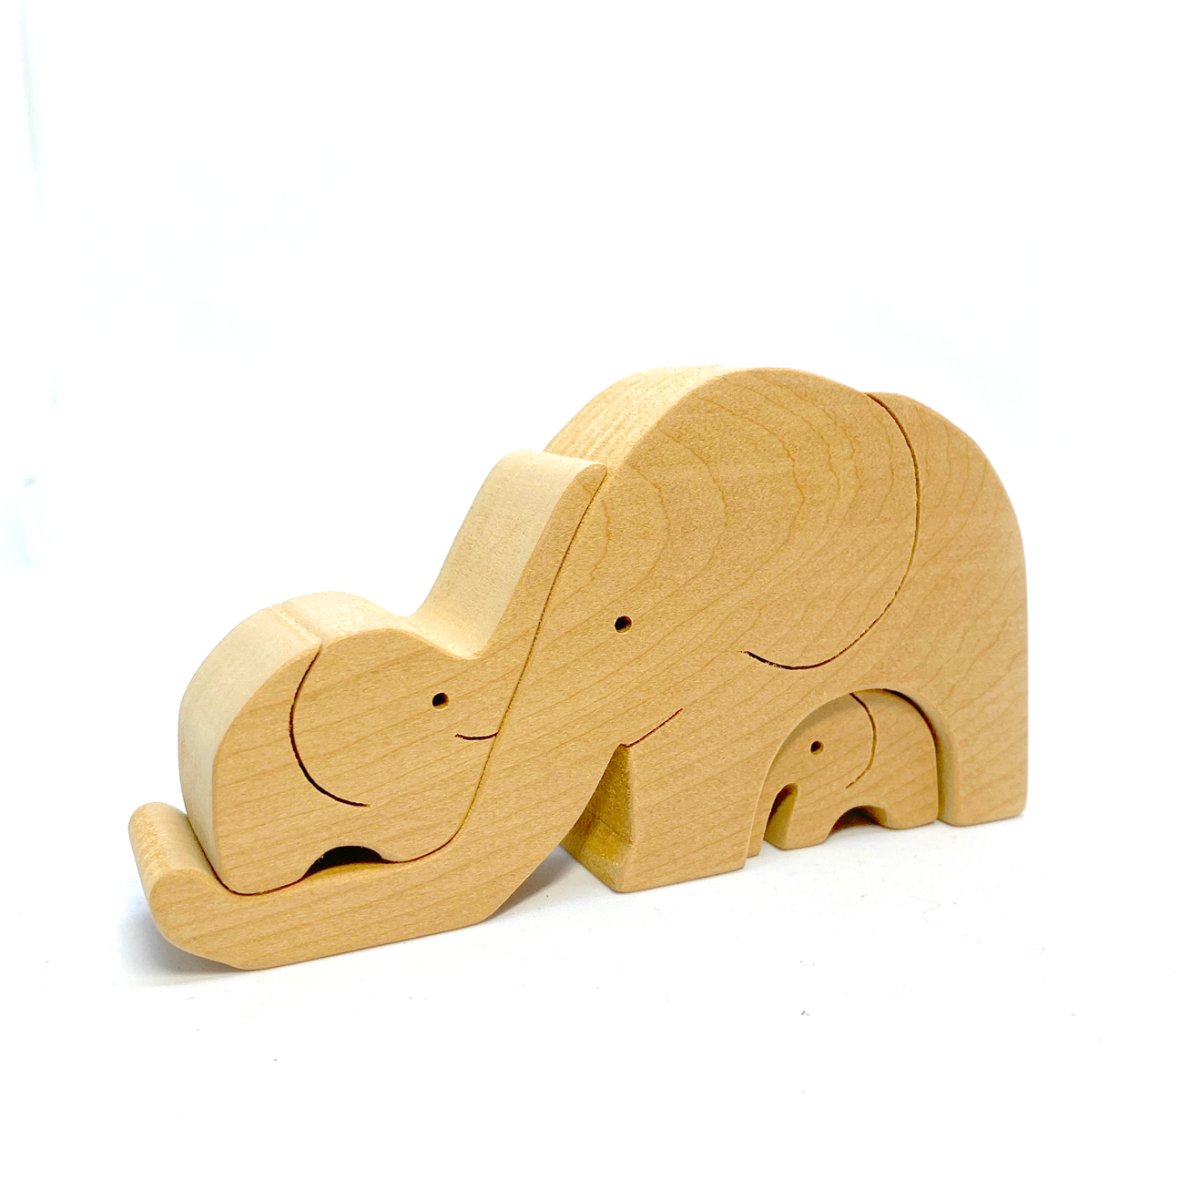 【組み木】ゾウ | ユーモラスな表情と細かな細工が魅力的 - ウェルフェアトレードショップ「マジェルカ」のオンラインショップ